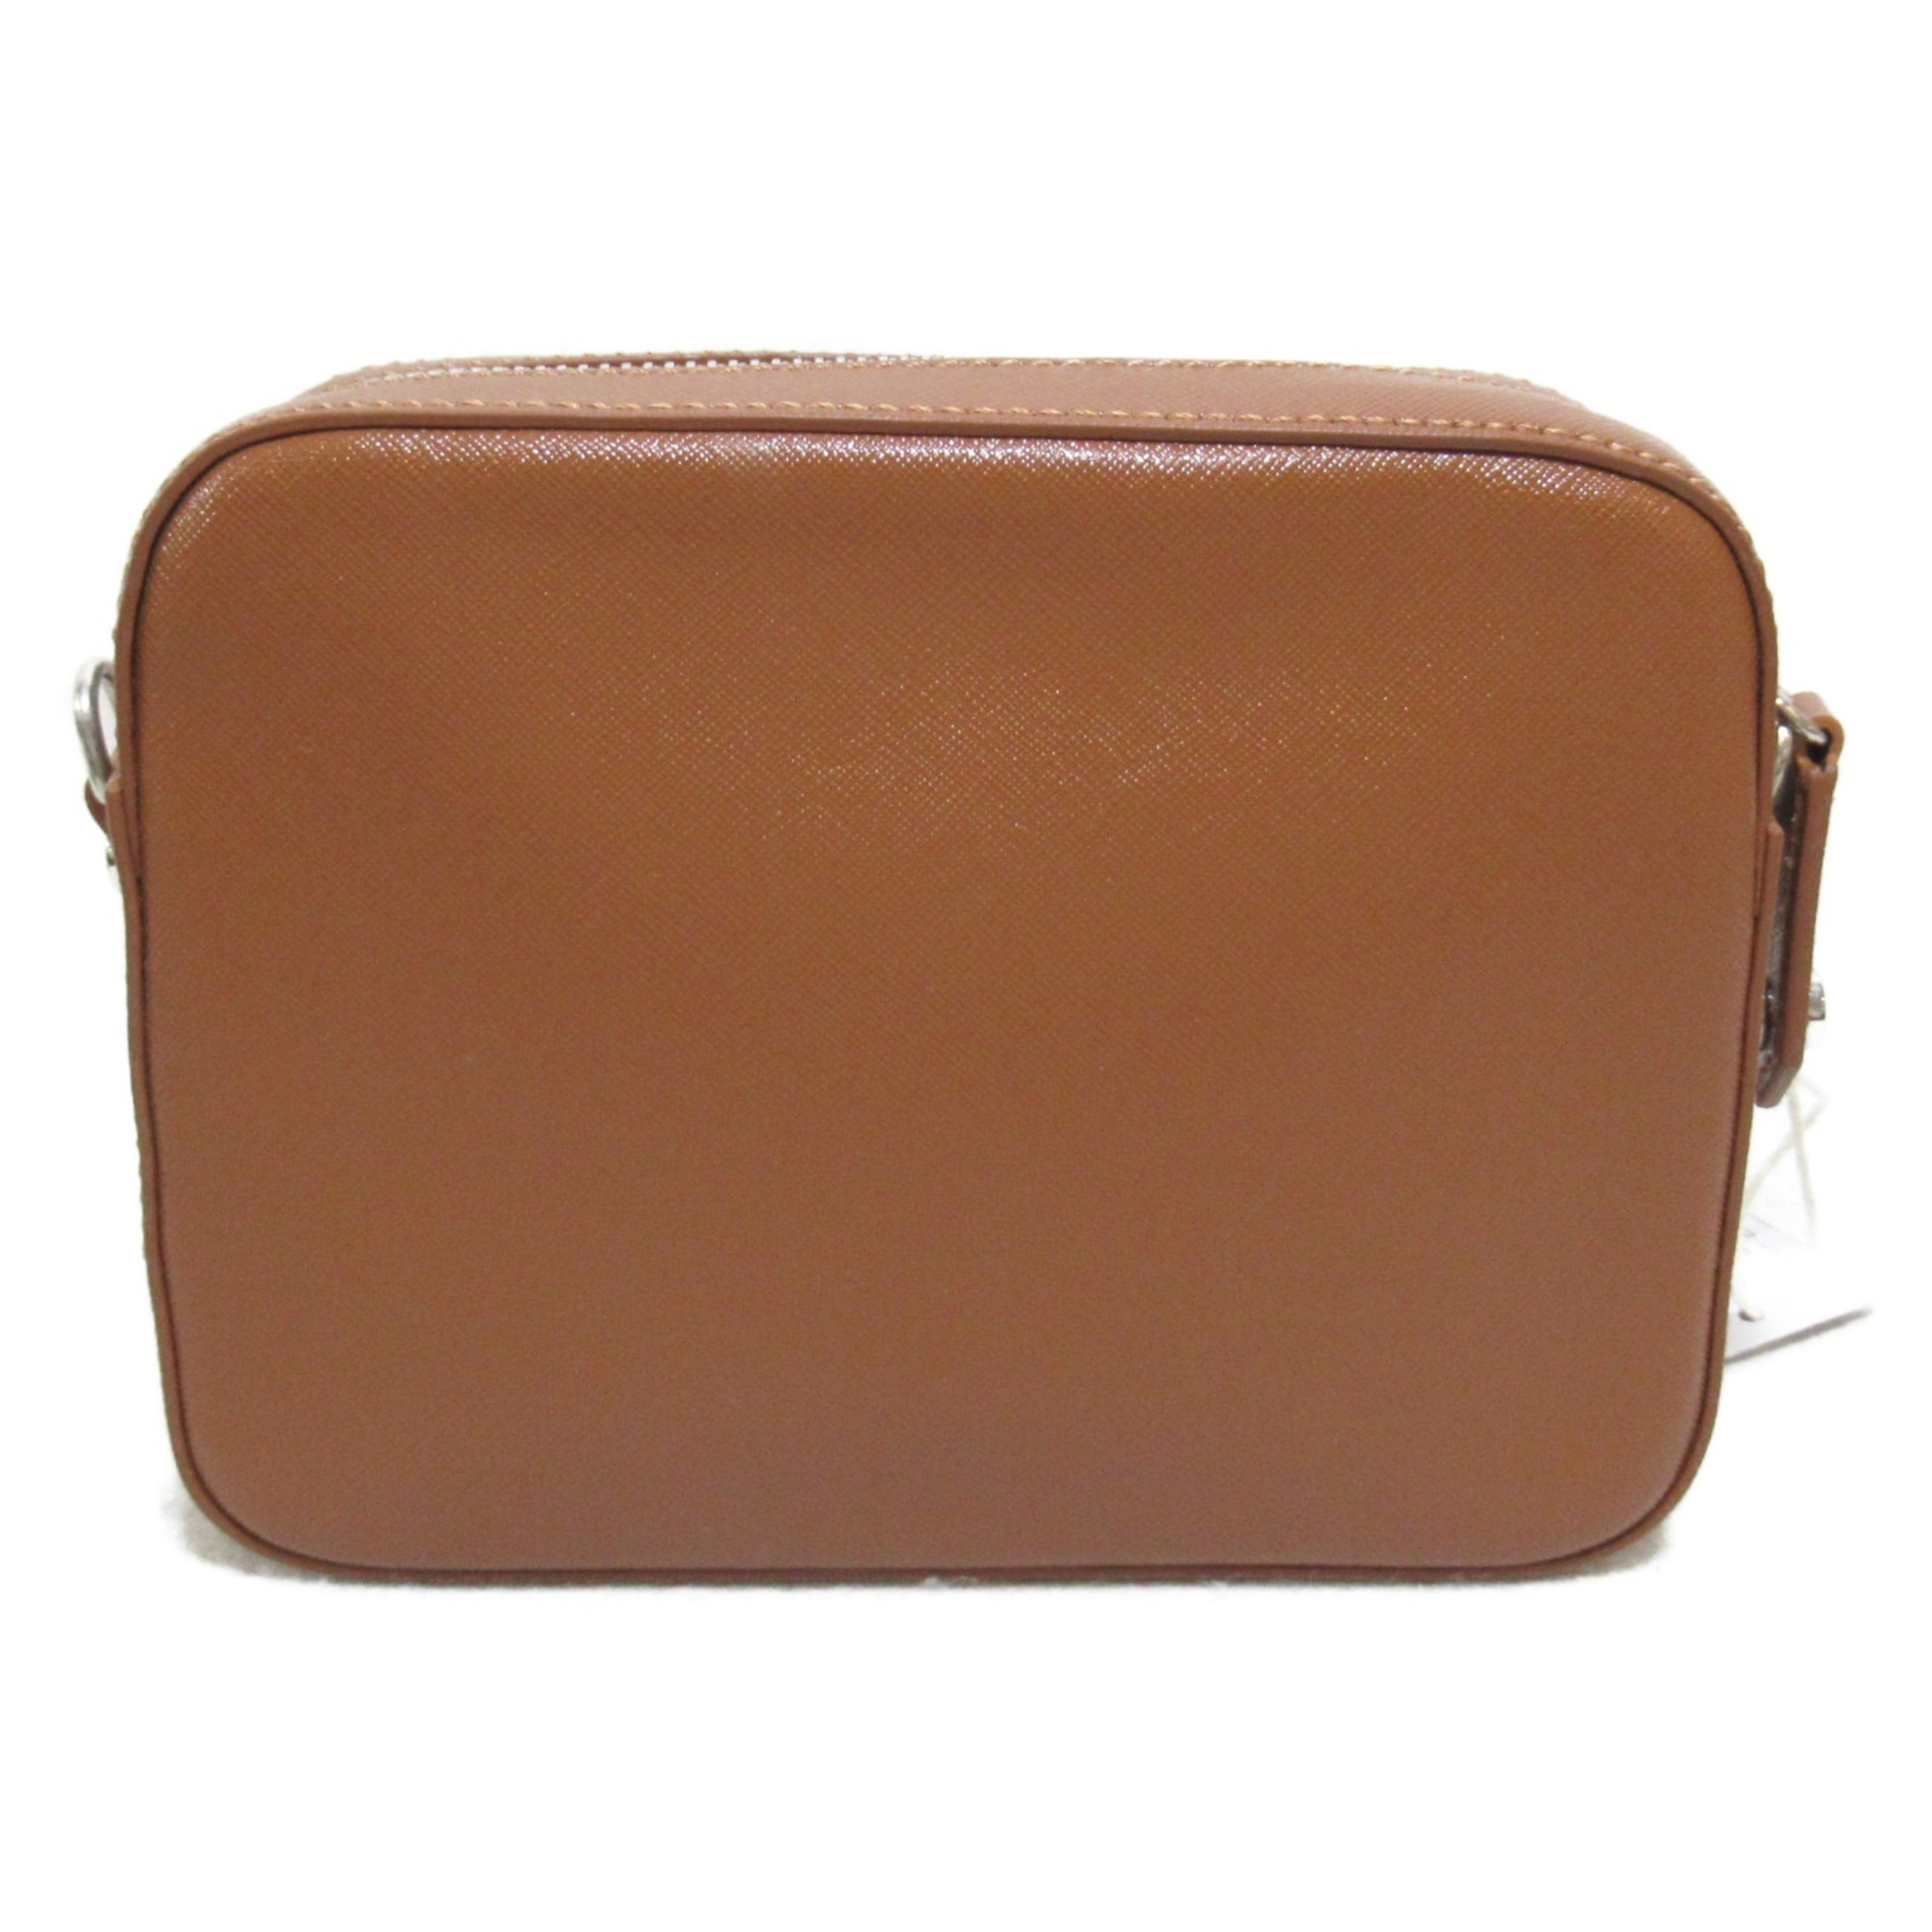 Vivienne Westwood Camera bag Shoulder Bag Brown leather 4303006441214D401